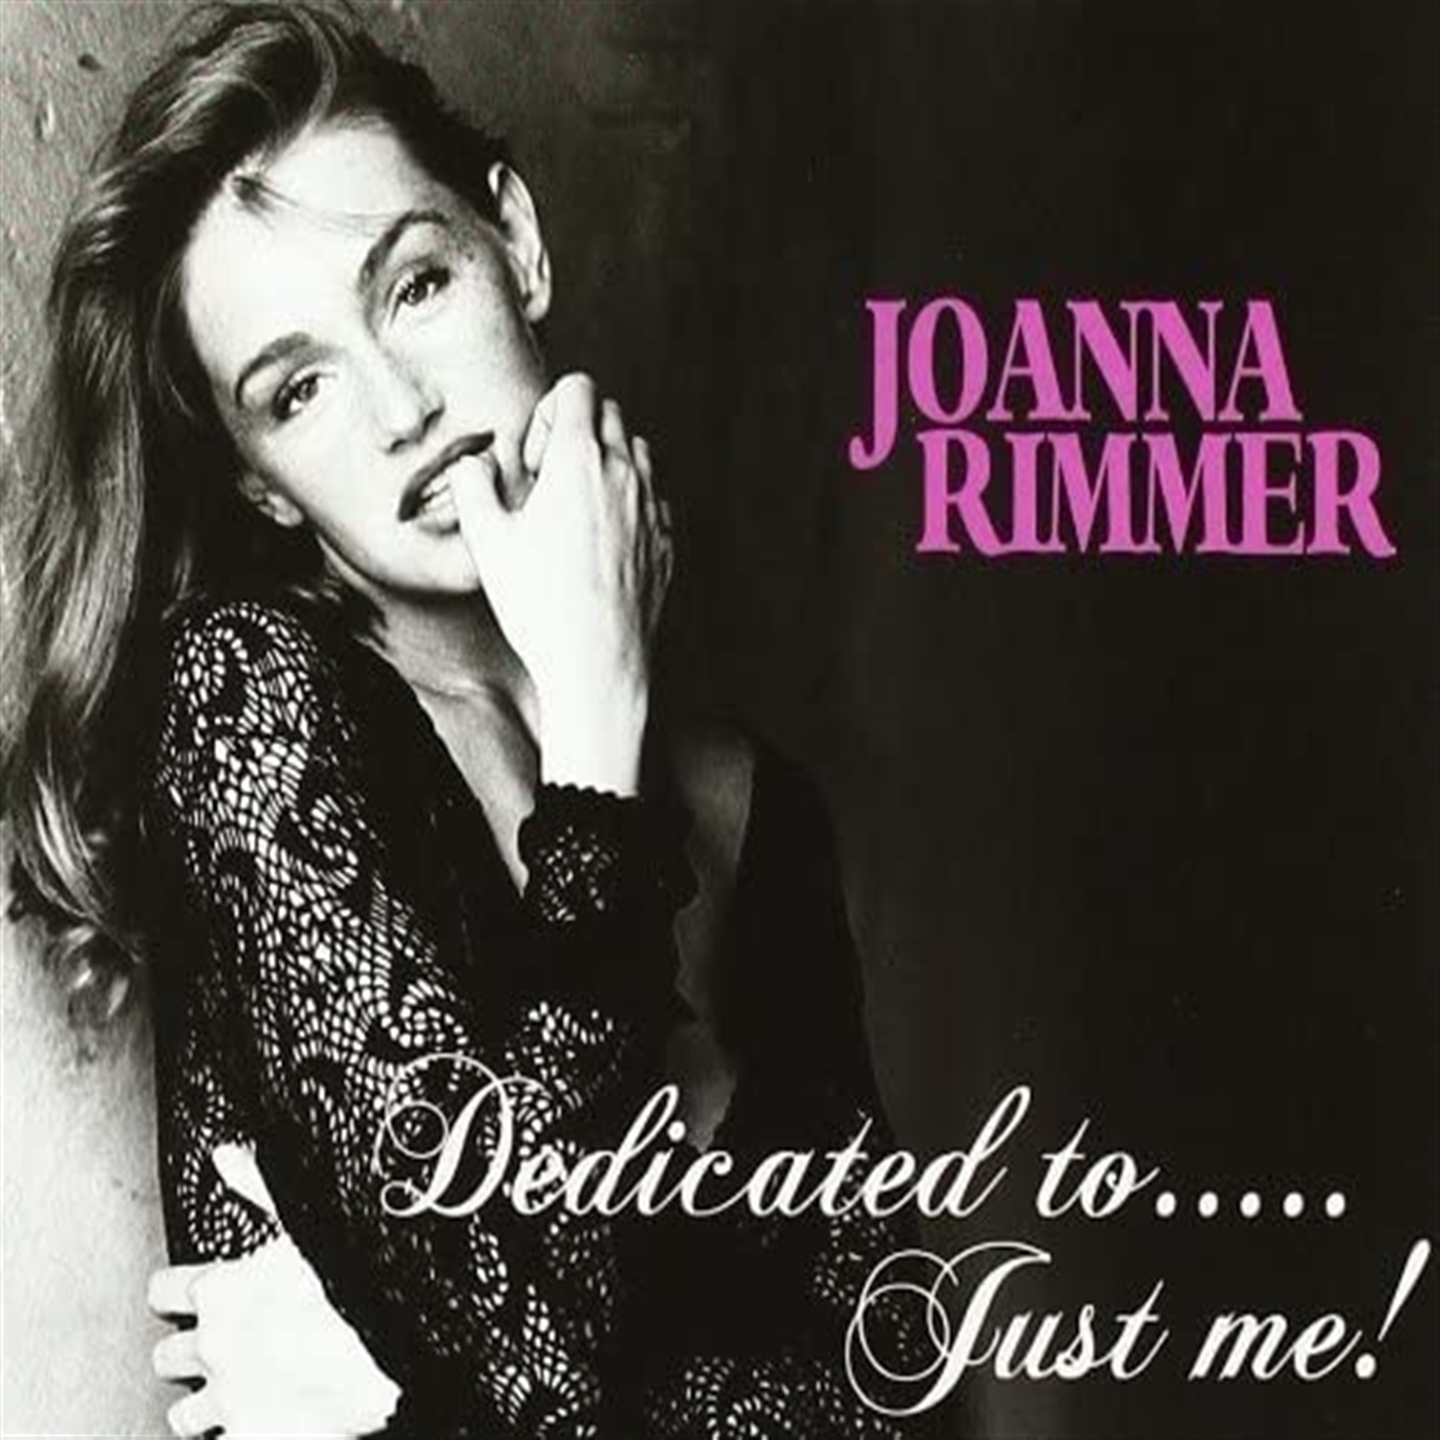 Joanna Rimmer - Dedicated To... Just Me! - Bild 1 von 1